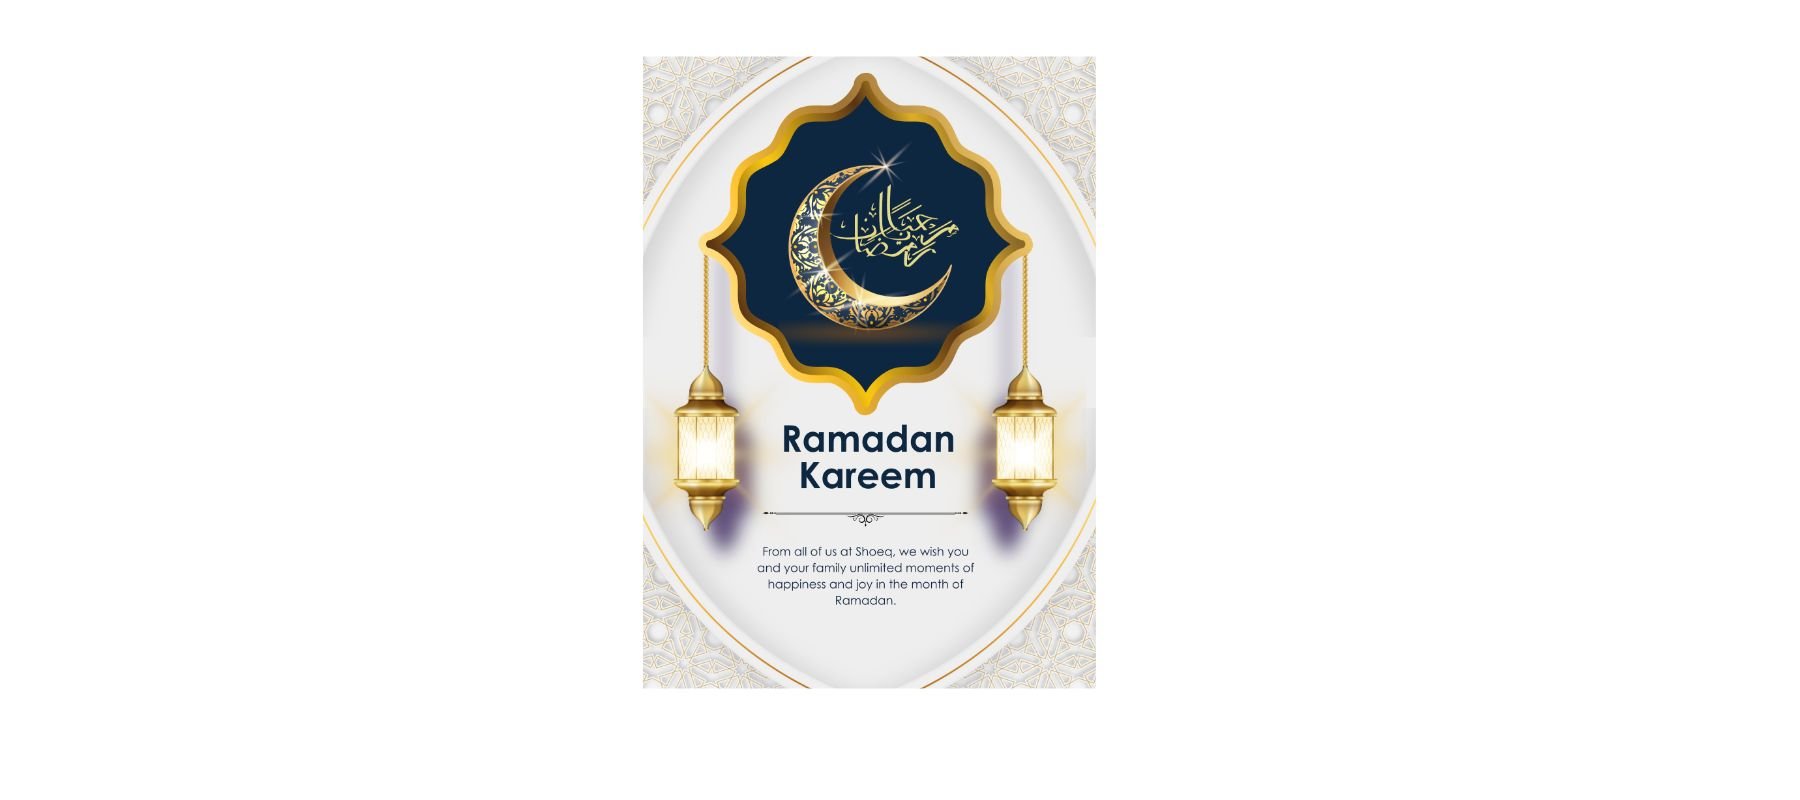 Ramadan Kareem from Shoeq - Shoeq